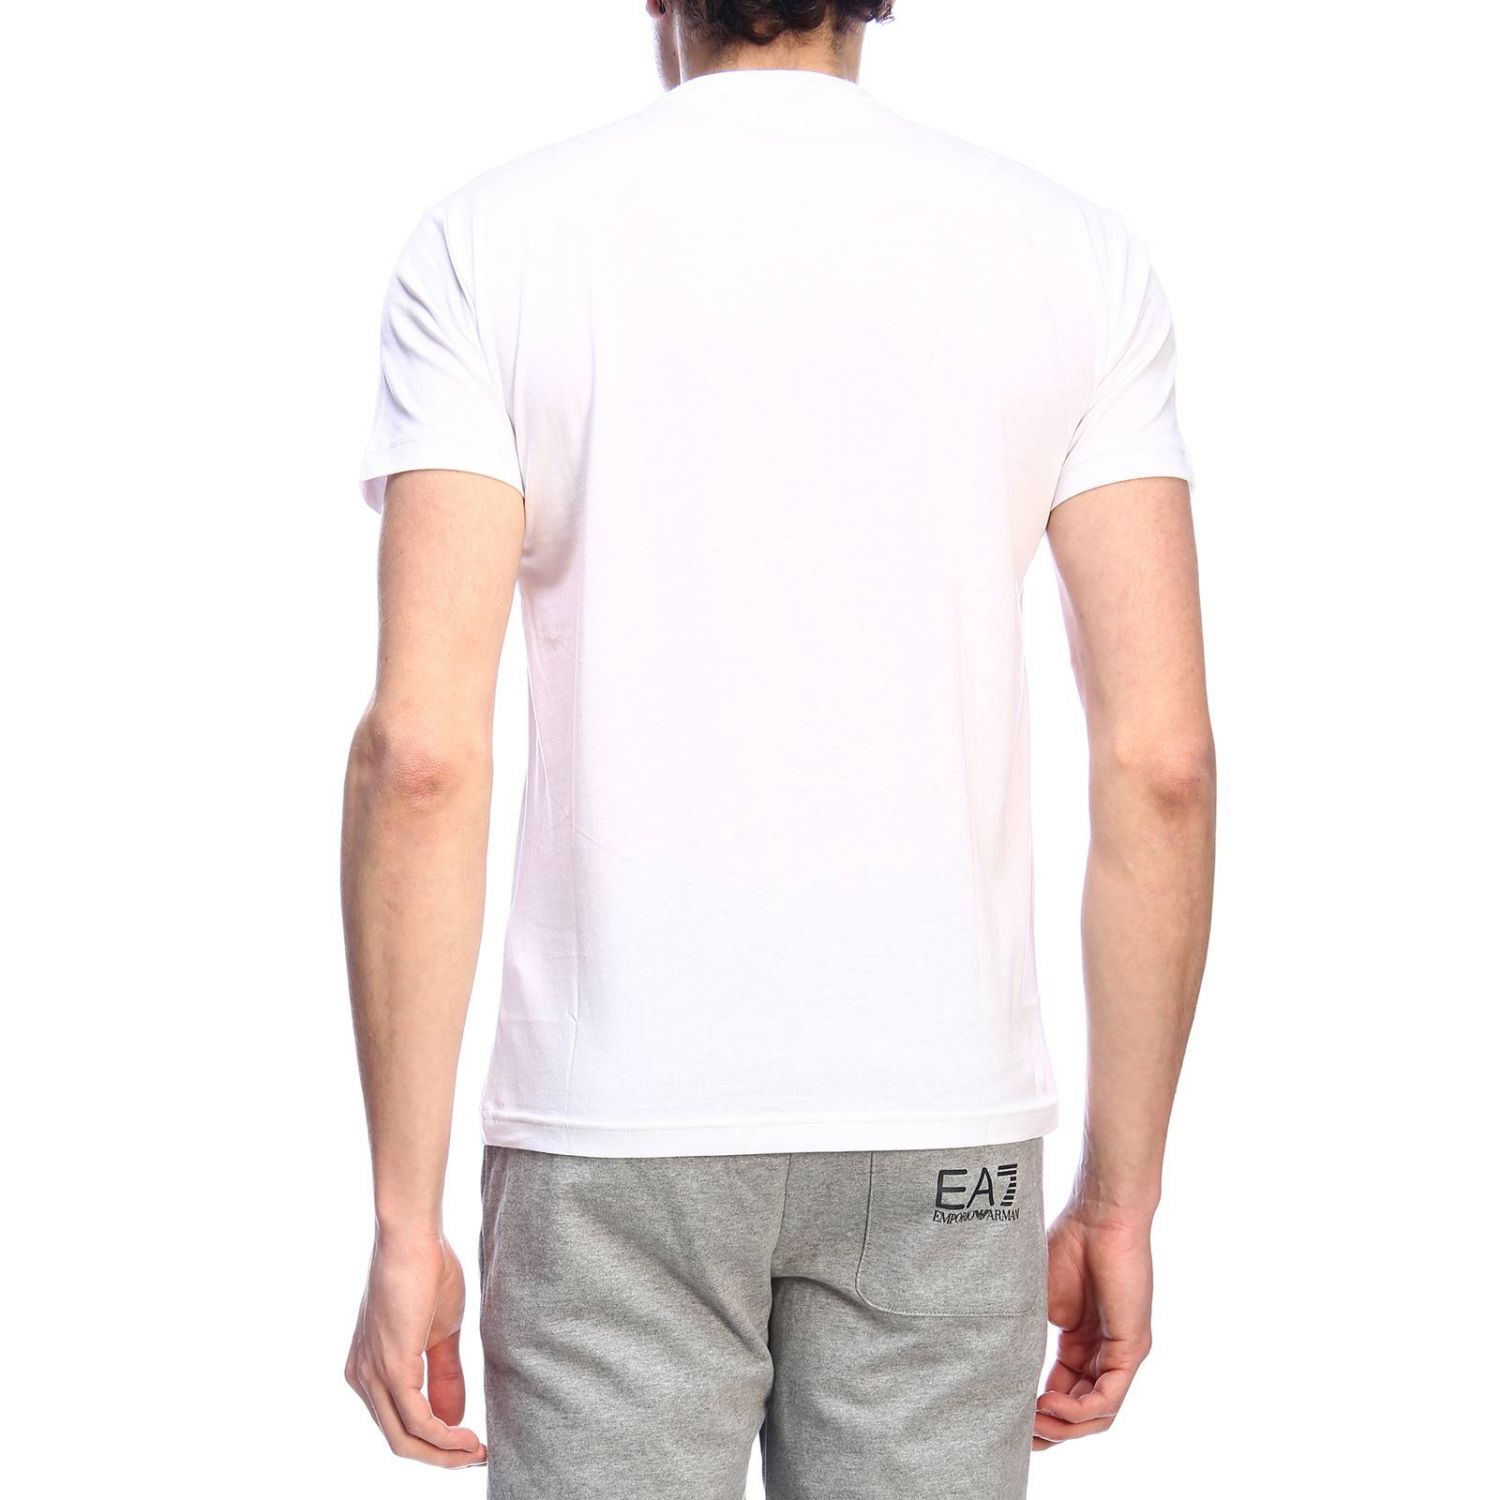 Ea7 Outlet: T-shirt men | T-Shirt Ea7 Men White | T-Shirt Ea7 3GPT67 ...